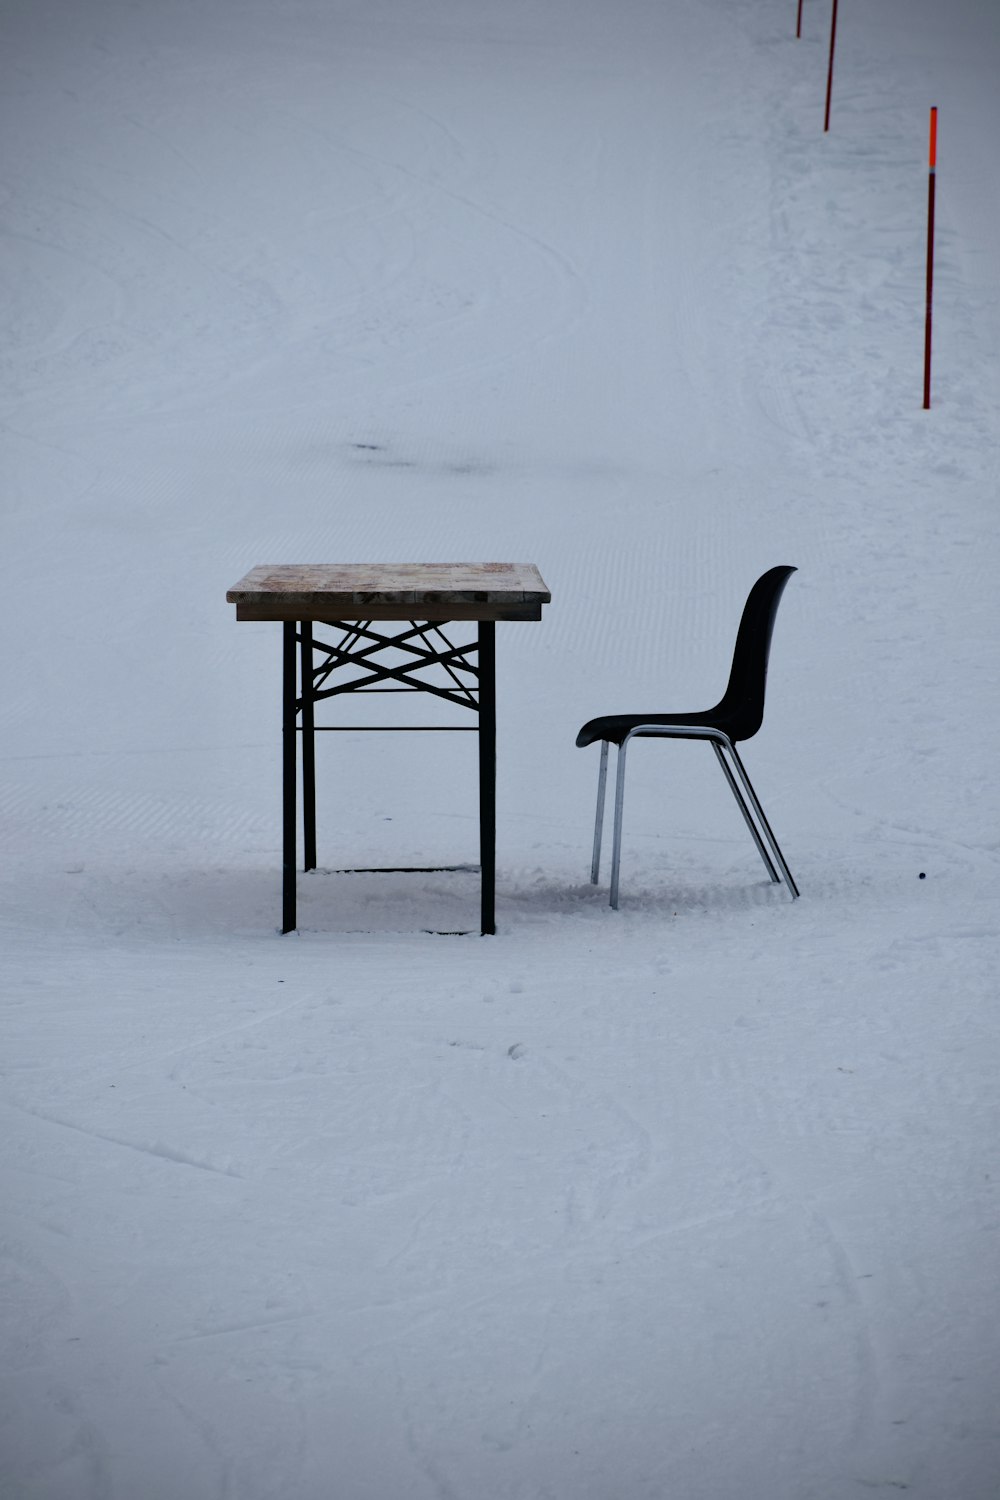 雪に覆われた地面に茶色の木製のテーブル